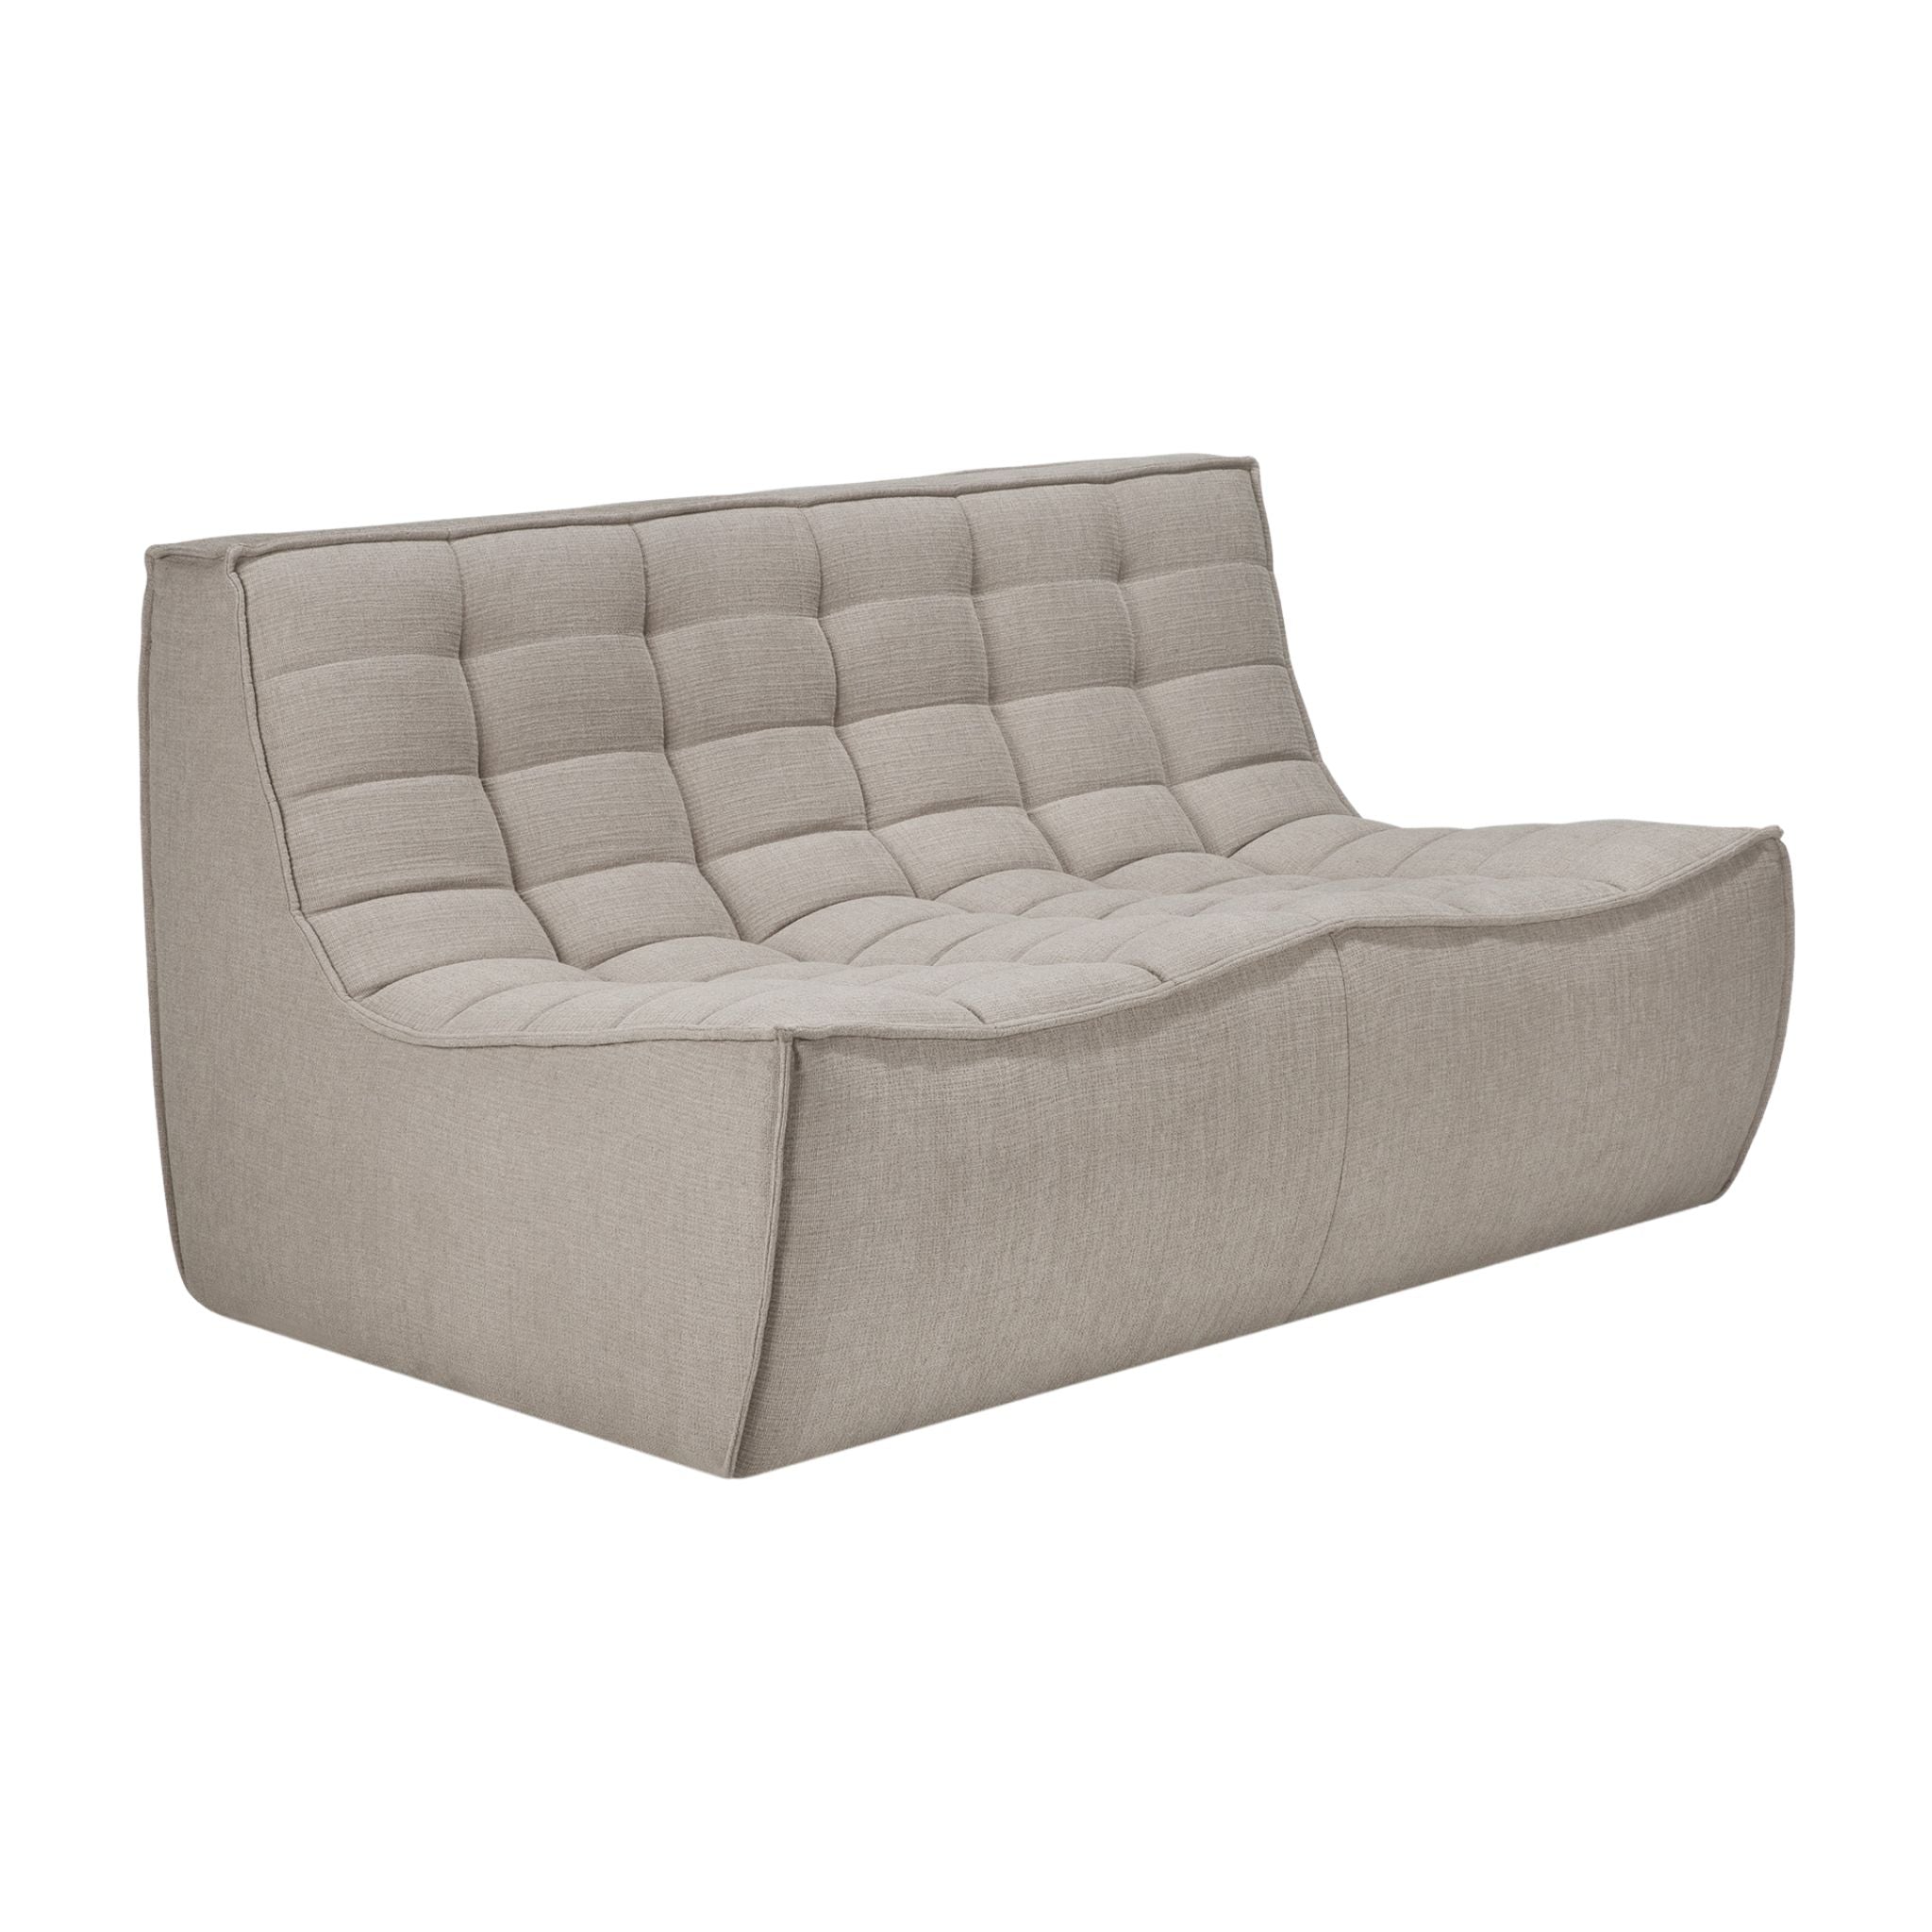 N701 Modular Sofa